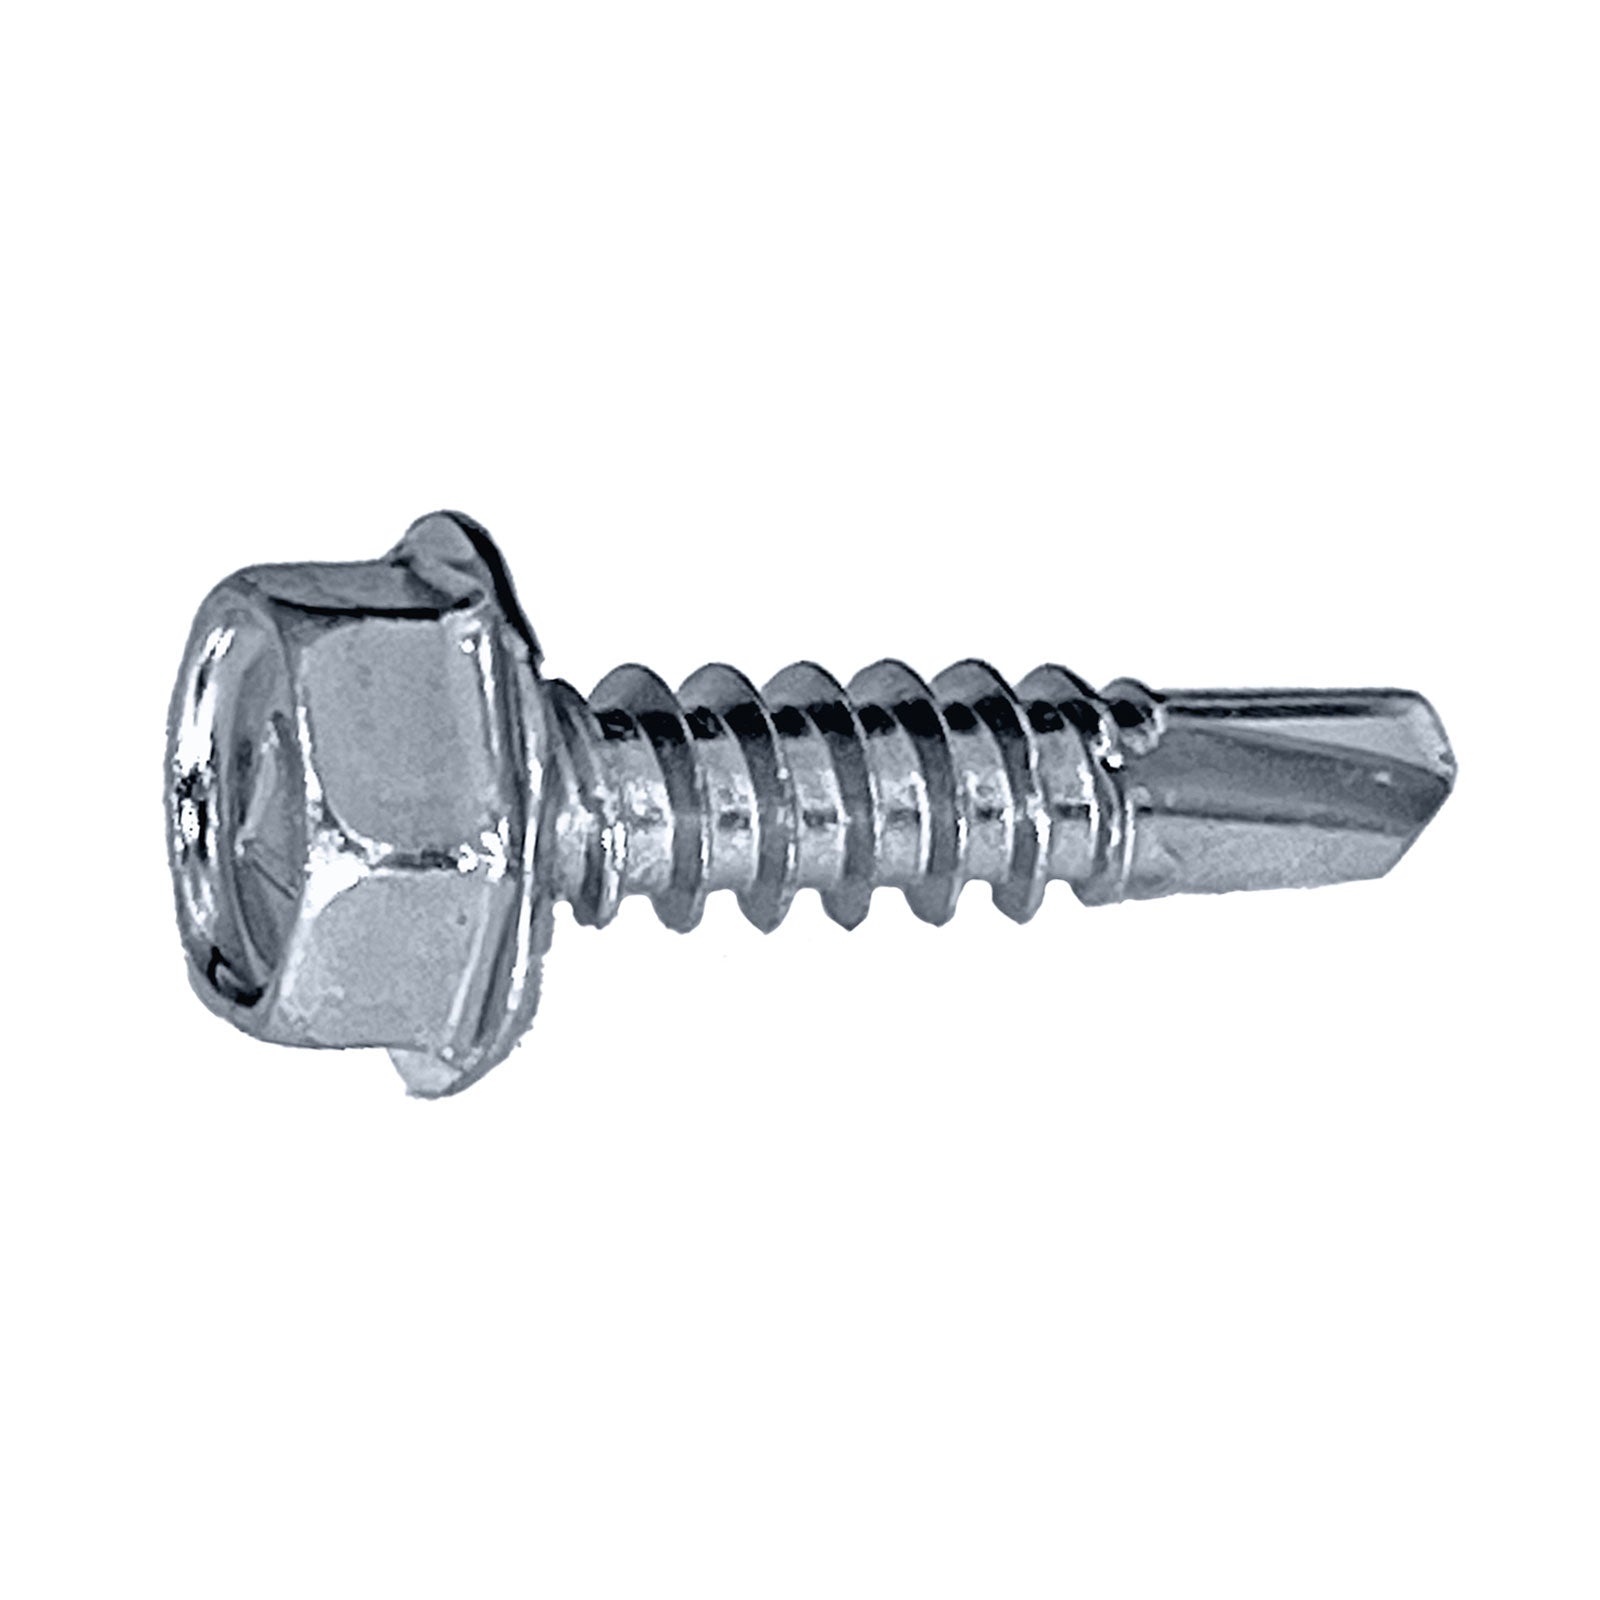 #10 x 1" Self-Drilling Metal Screw, Hex Head - Zinc, Pkg 3000